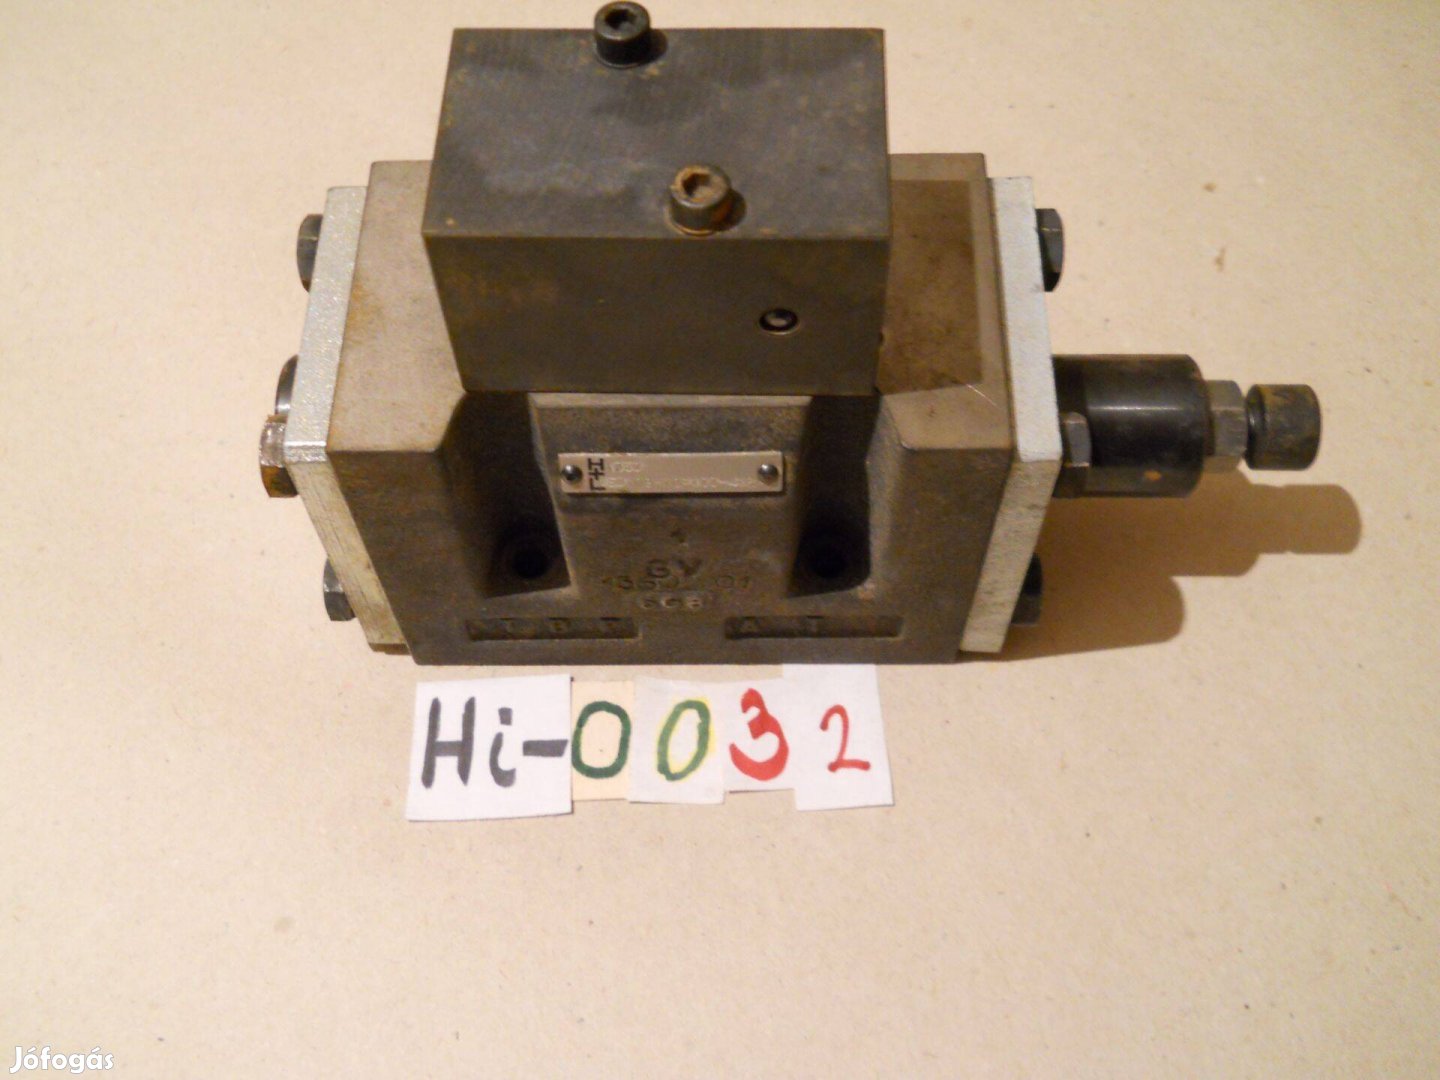 H + L 1360 jelzésű hidraulikus útváltószelep eladó (Hi-0032)